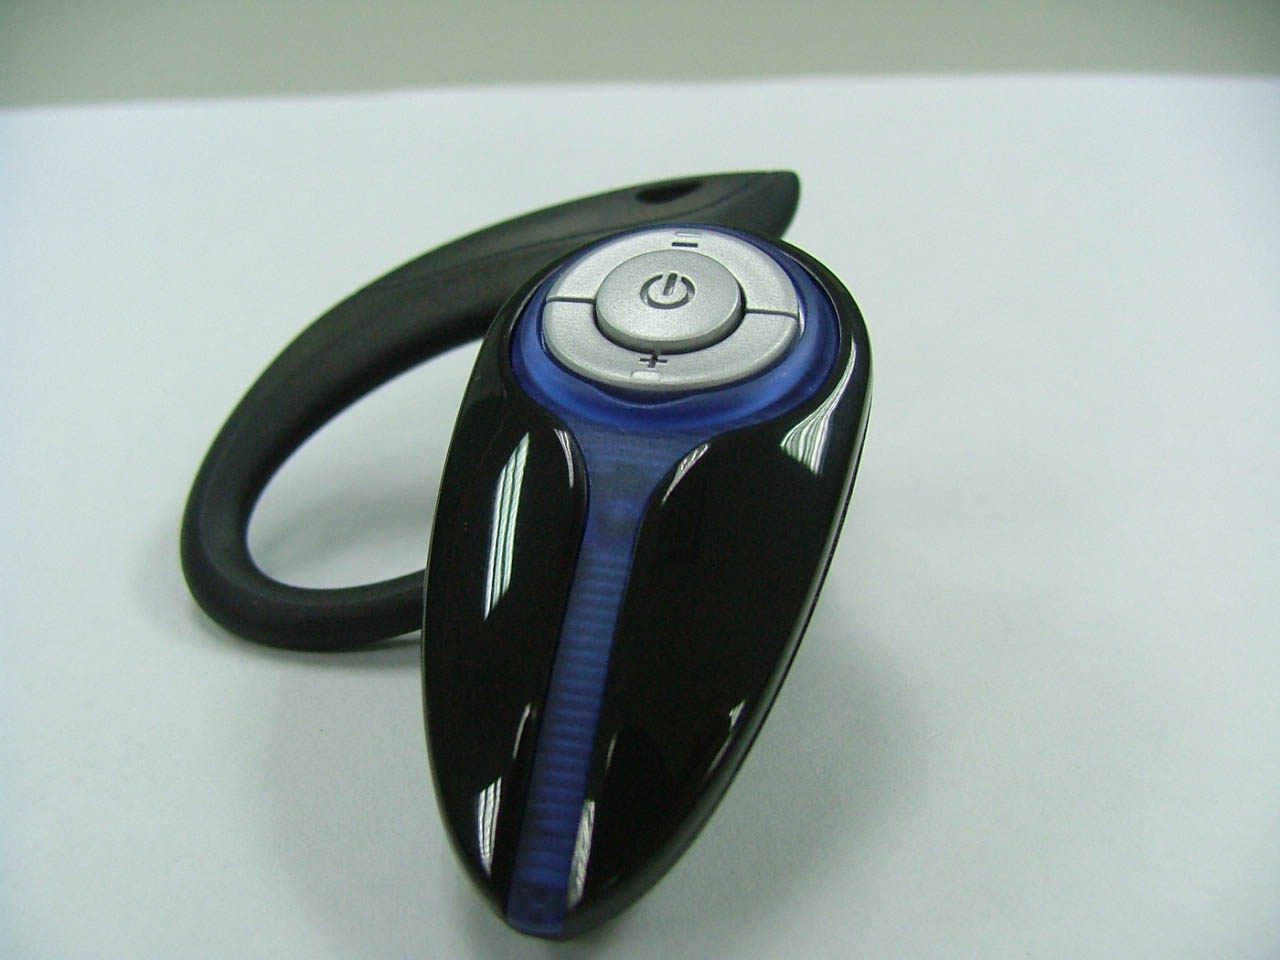 Bluetooth Headset (BT-014)